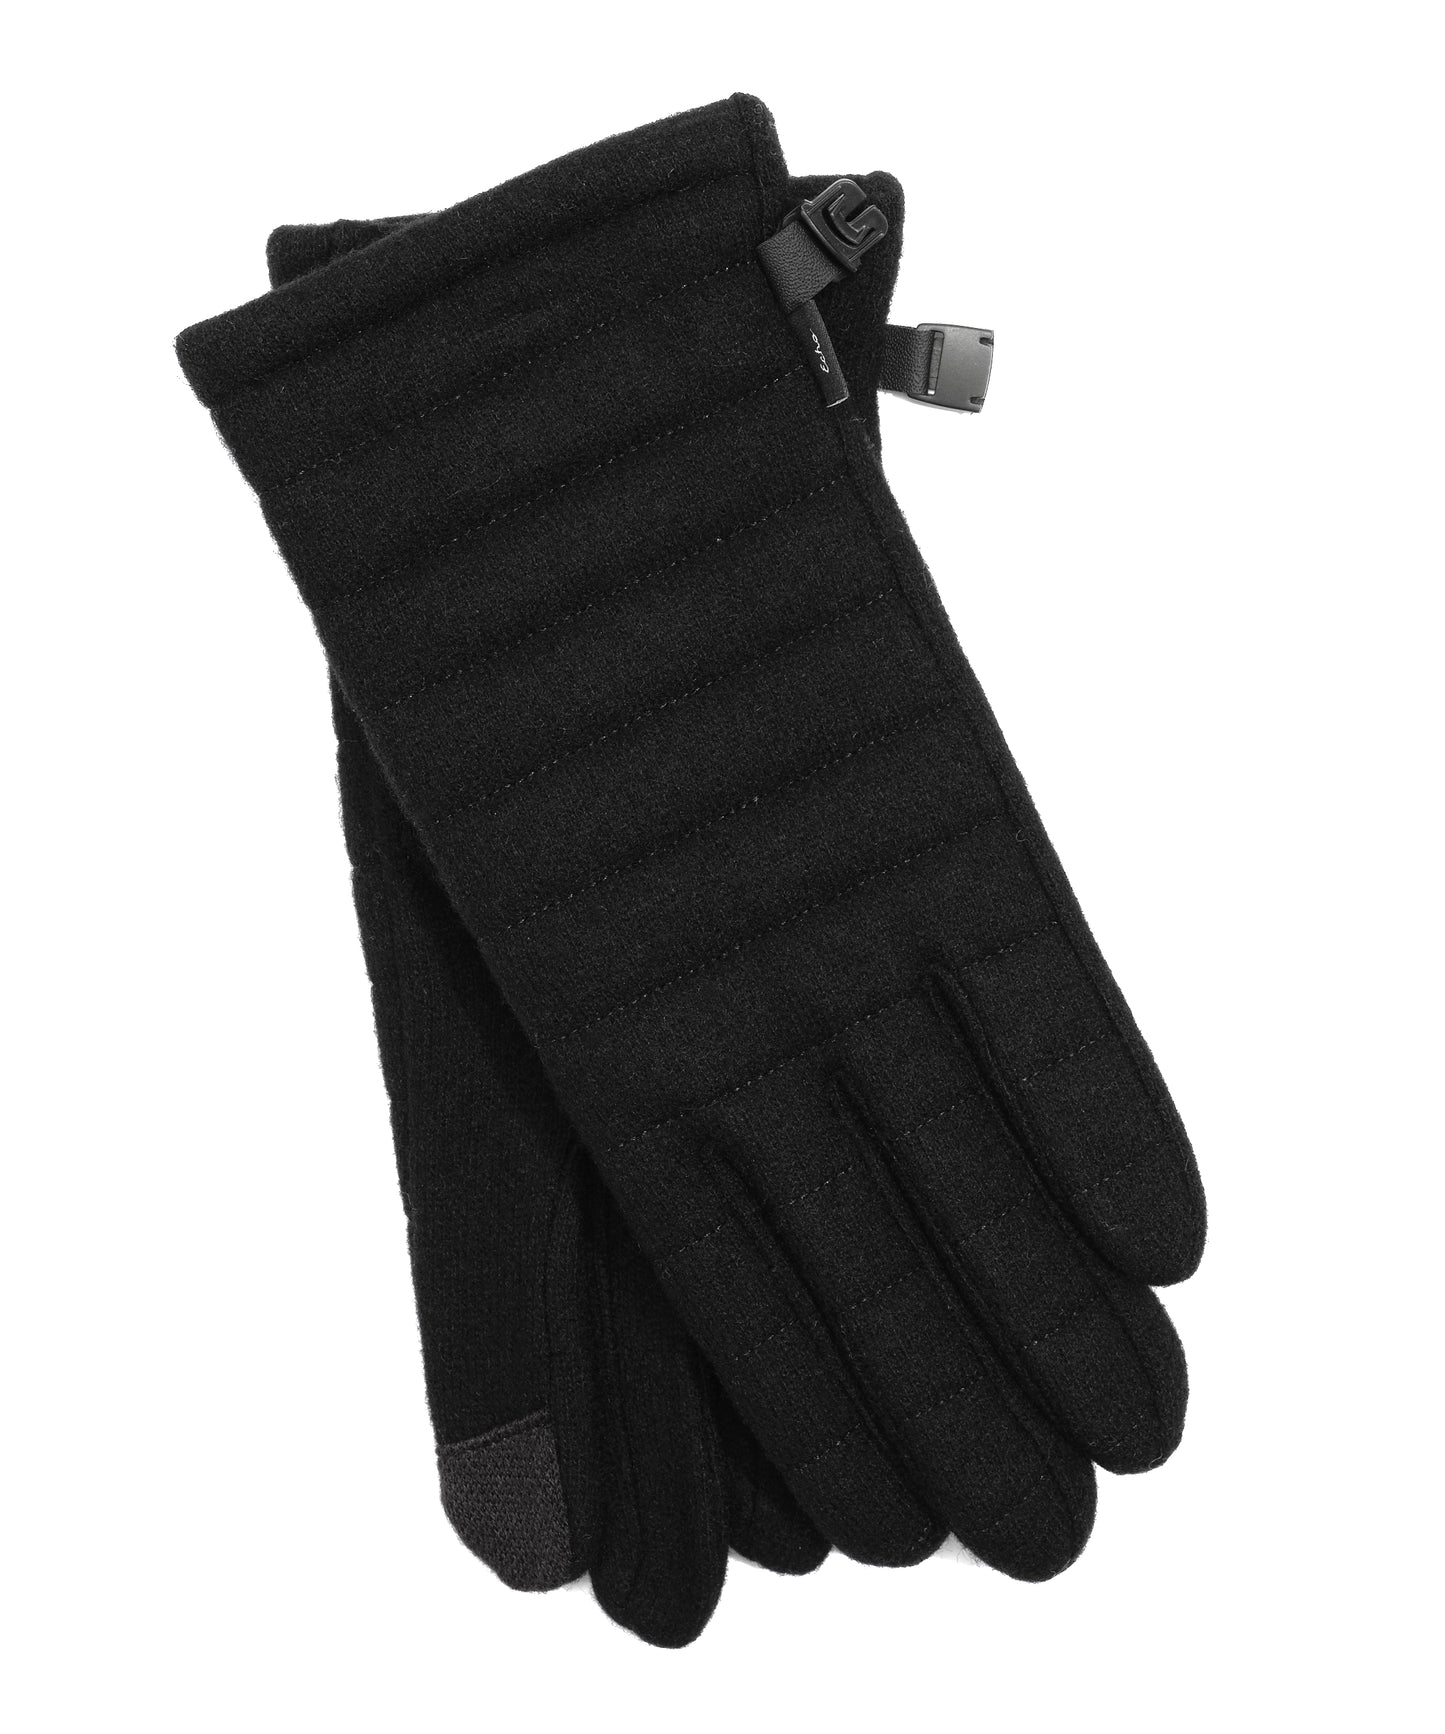 Wool Blend Commuter Glove